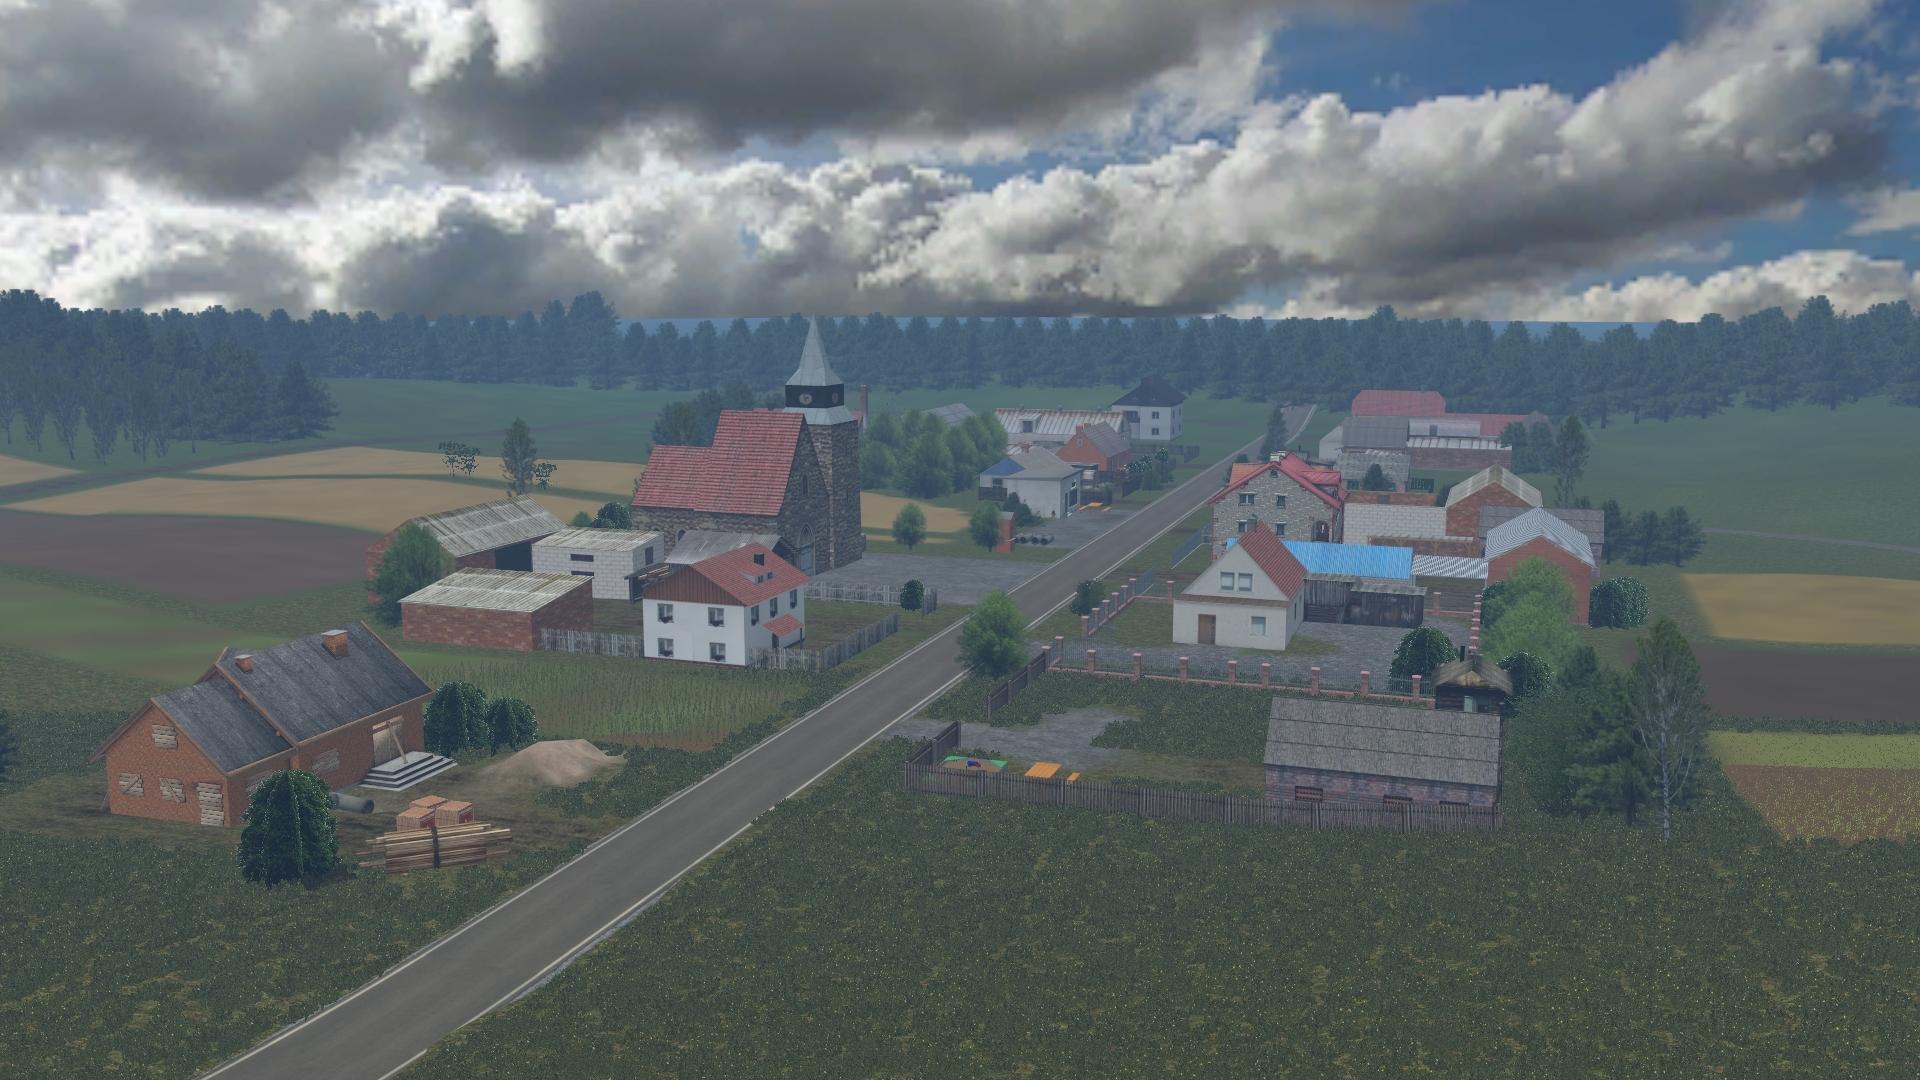 farming simulator 15 mods